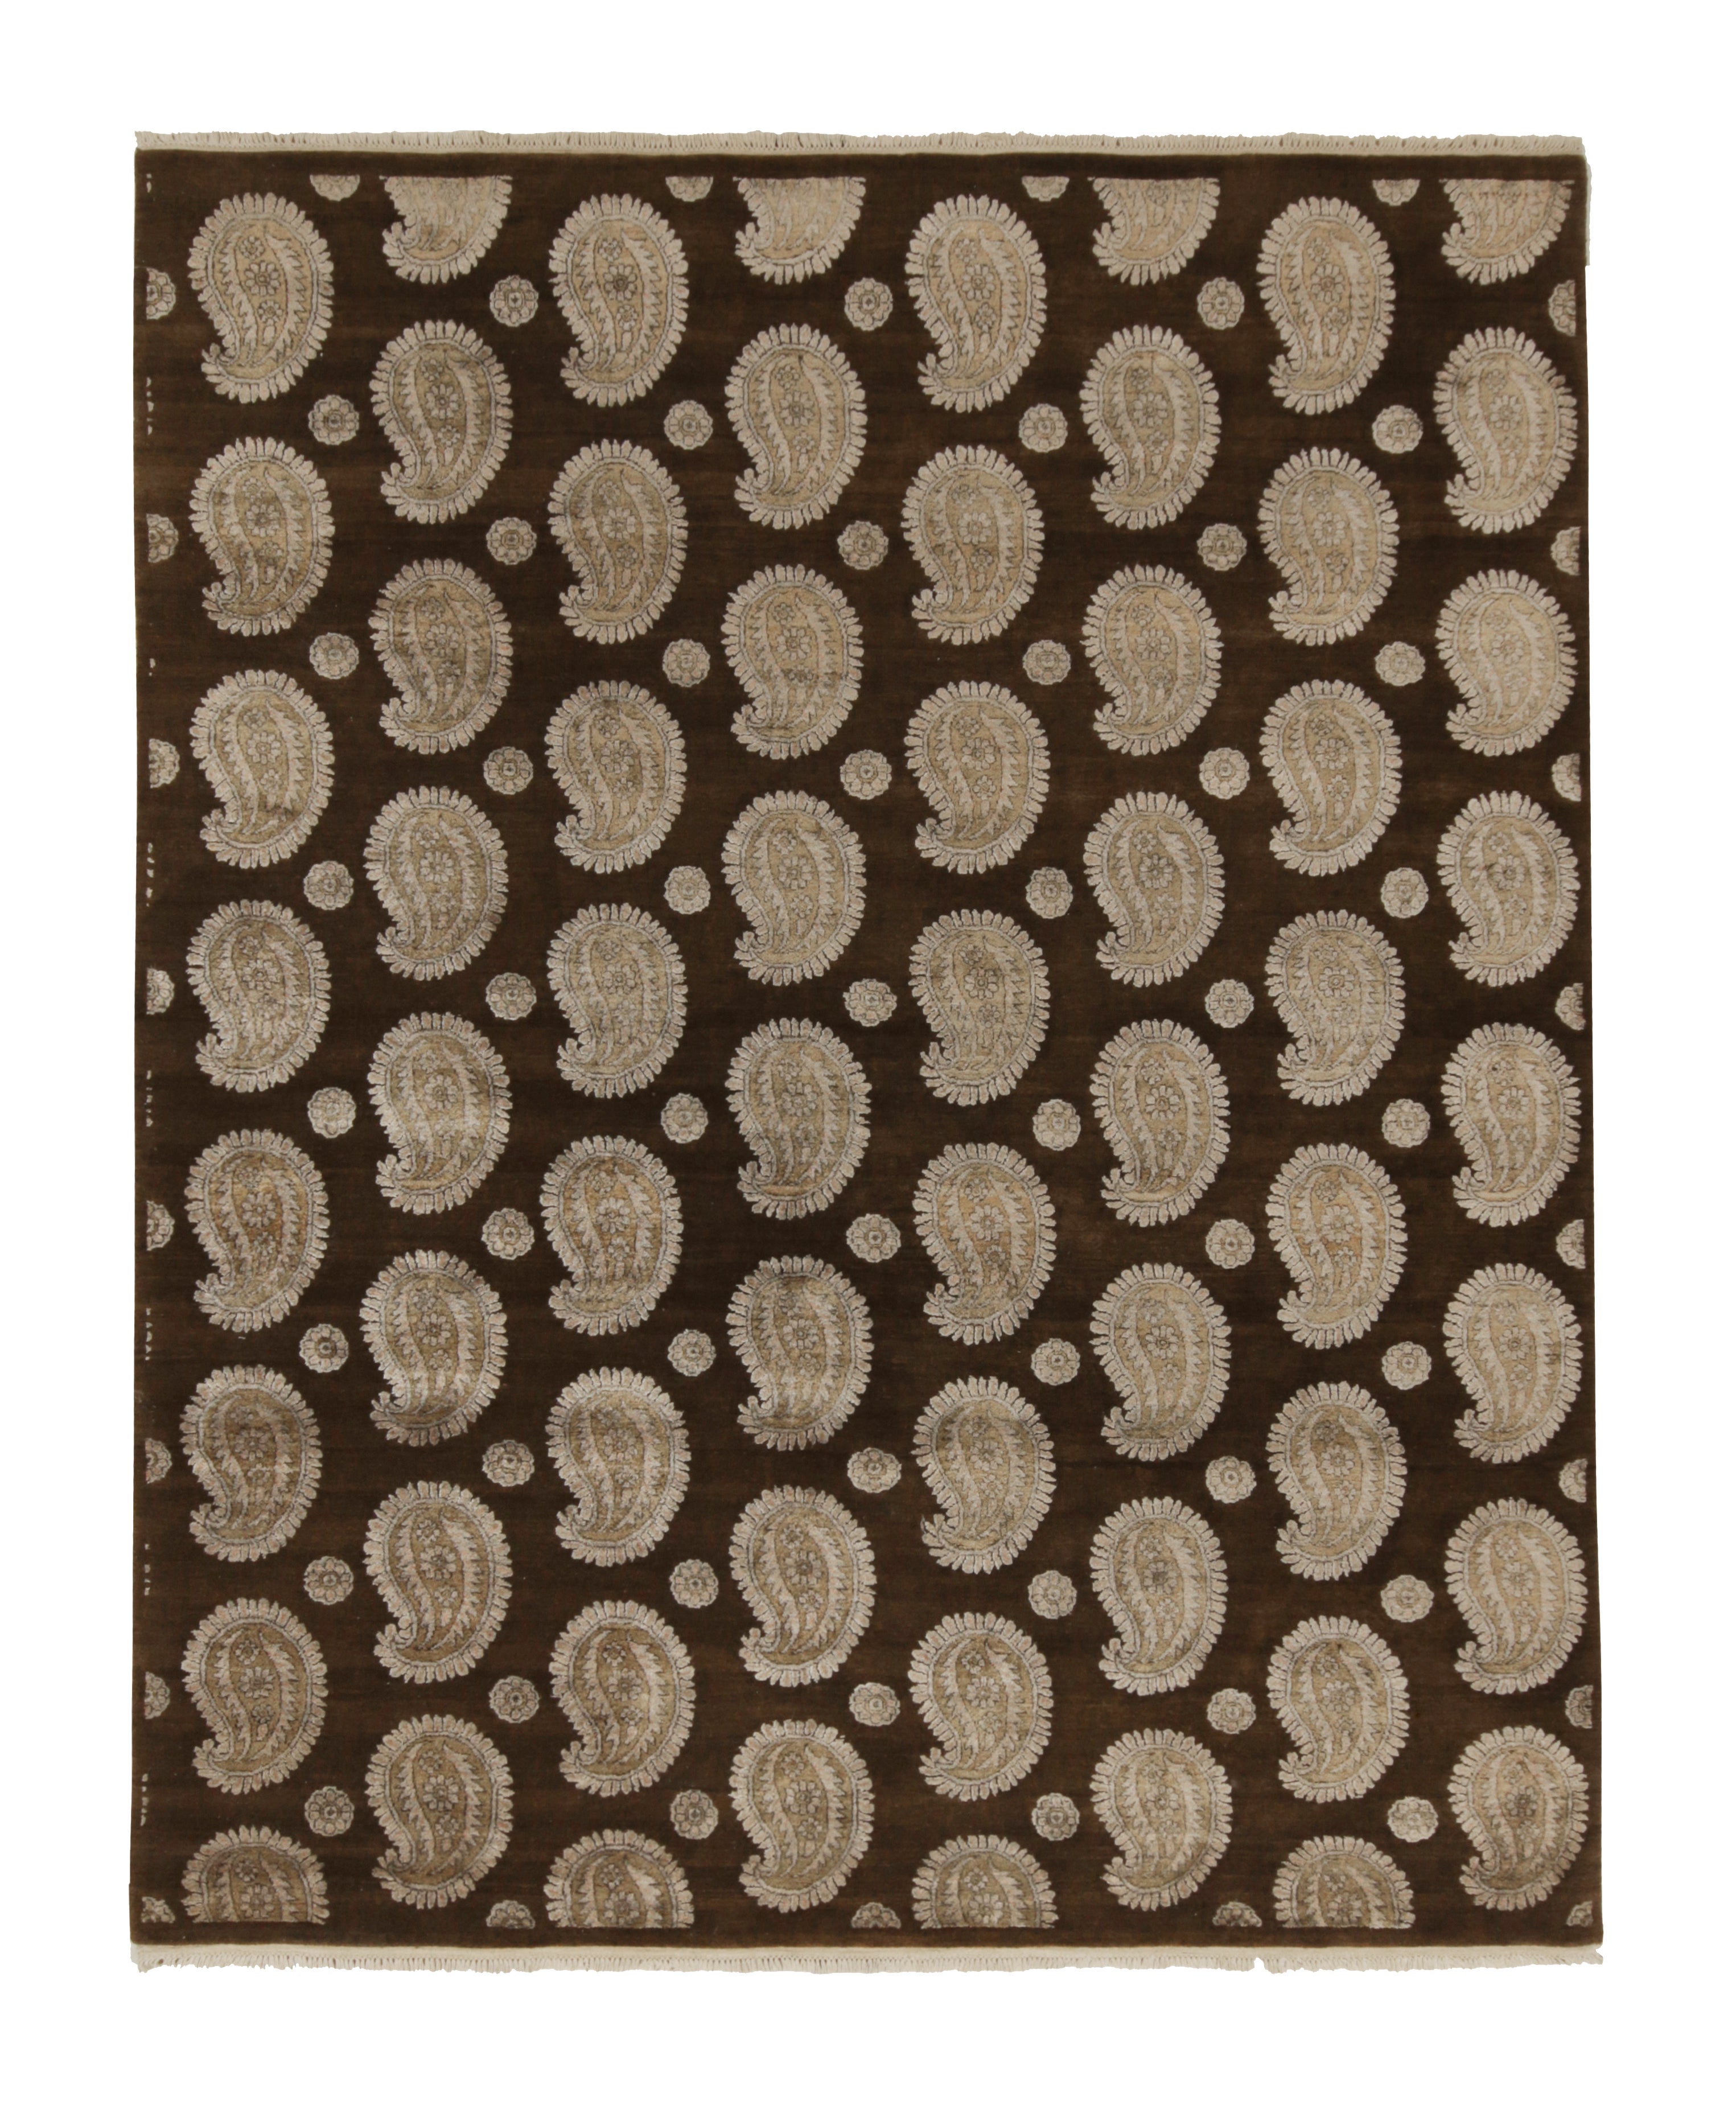 Teppich & Kelim-Teppich im klassischen Stil in Braun mit elfenbeinfarbenen Paisley-Mustern